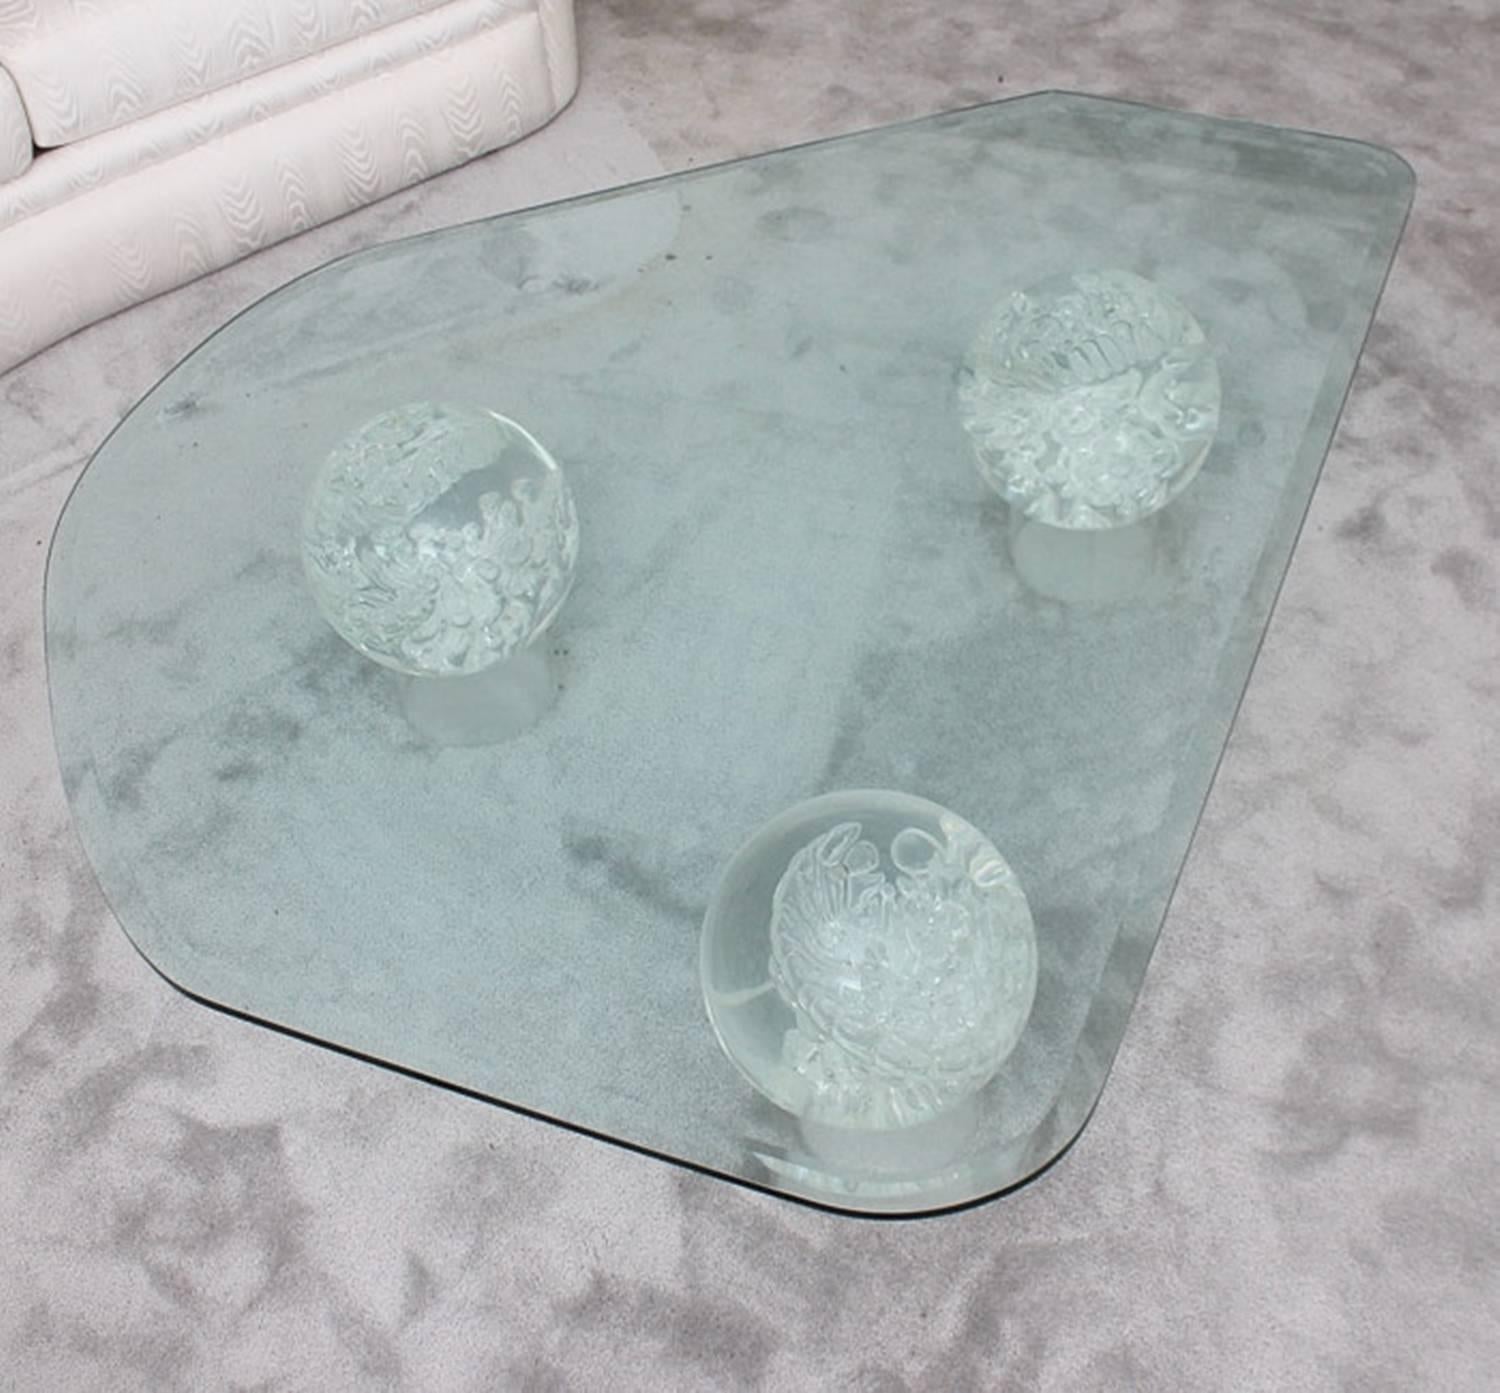 Ein Mid-Century Modern Couchtisch aus Glas. Dieses Stück hat eine unregelmäßig geformte Platte mit einer abgeschrägten Kante. Die Spitze steht auf drei Glaskugeln, in denen Blasen und Strudel sichtbar sind. Jede Kugel ruht auf einem zylindrischen